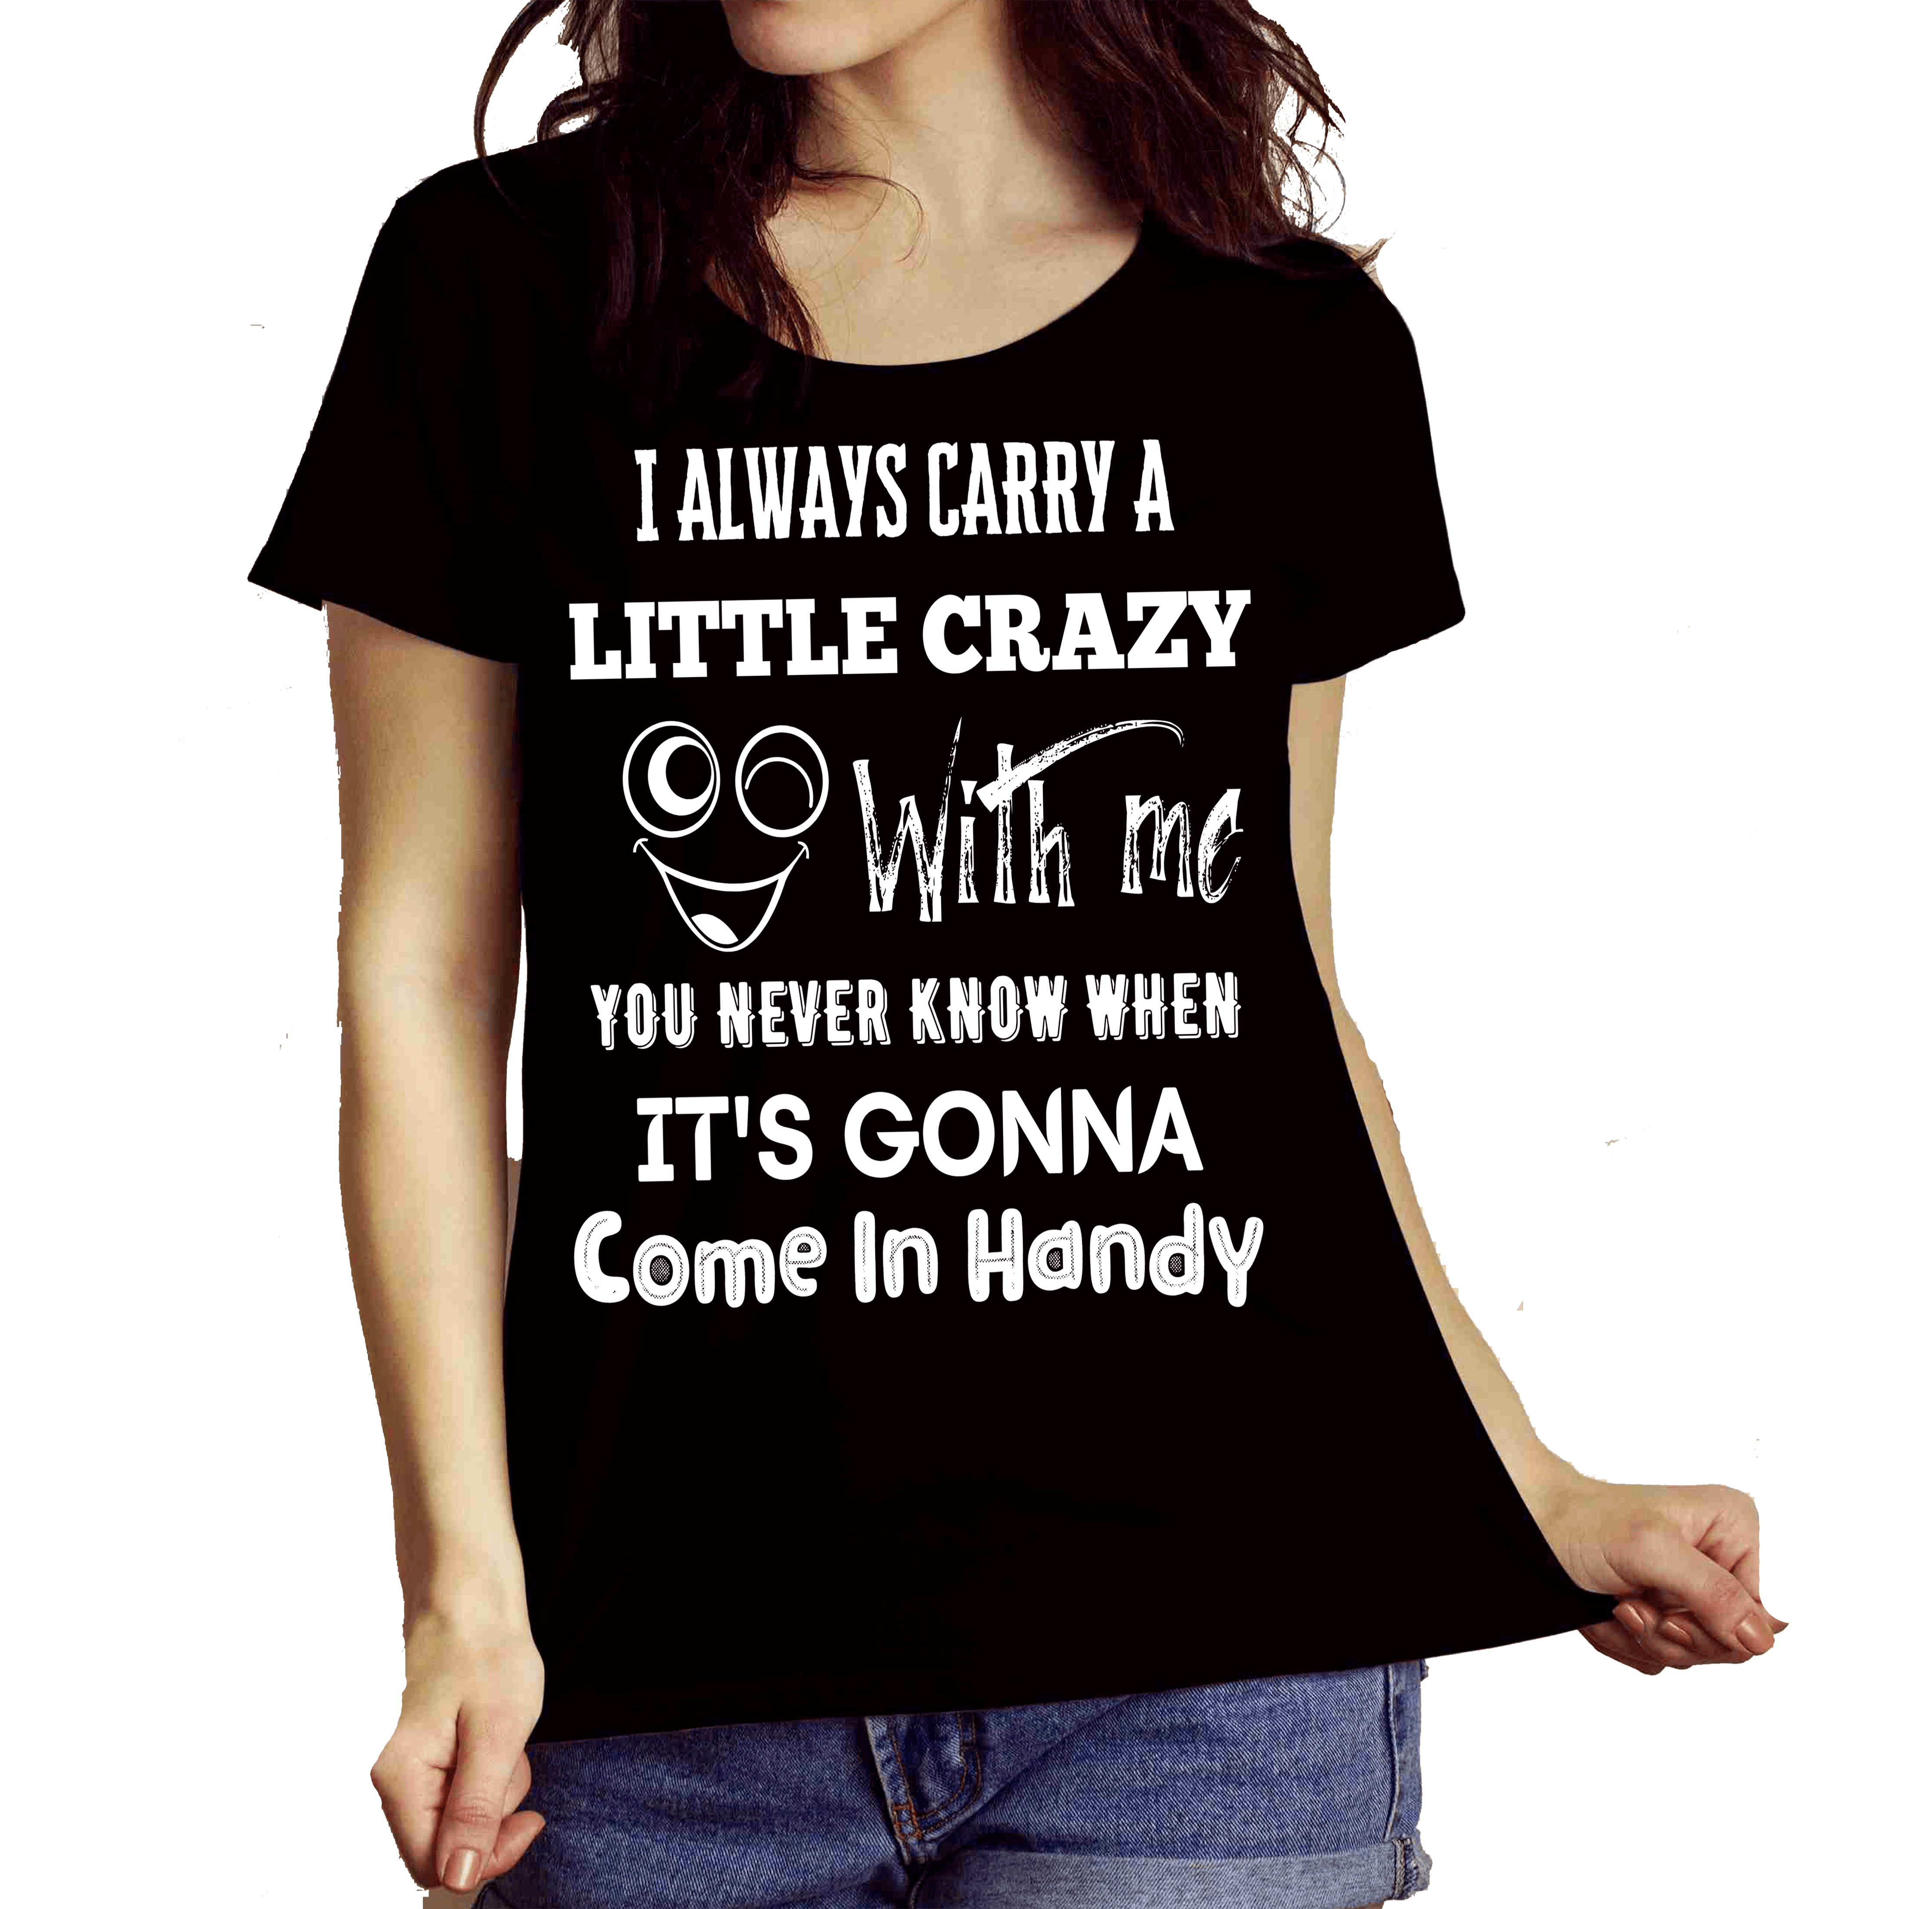 "LITTLE CRAZY" T-shirt